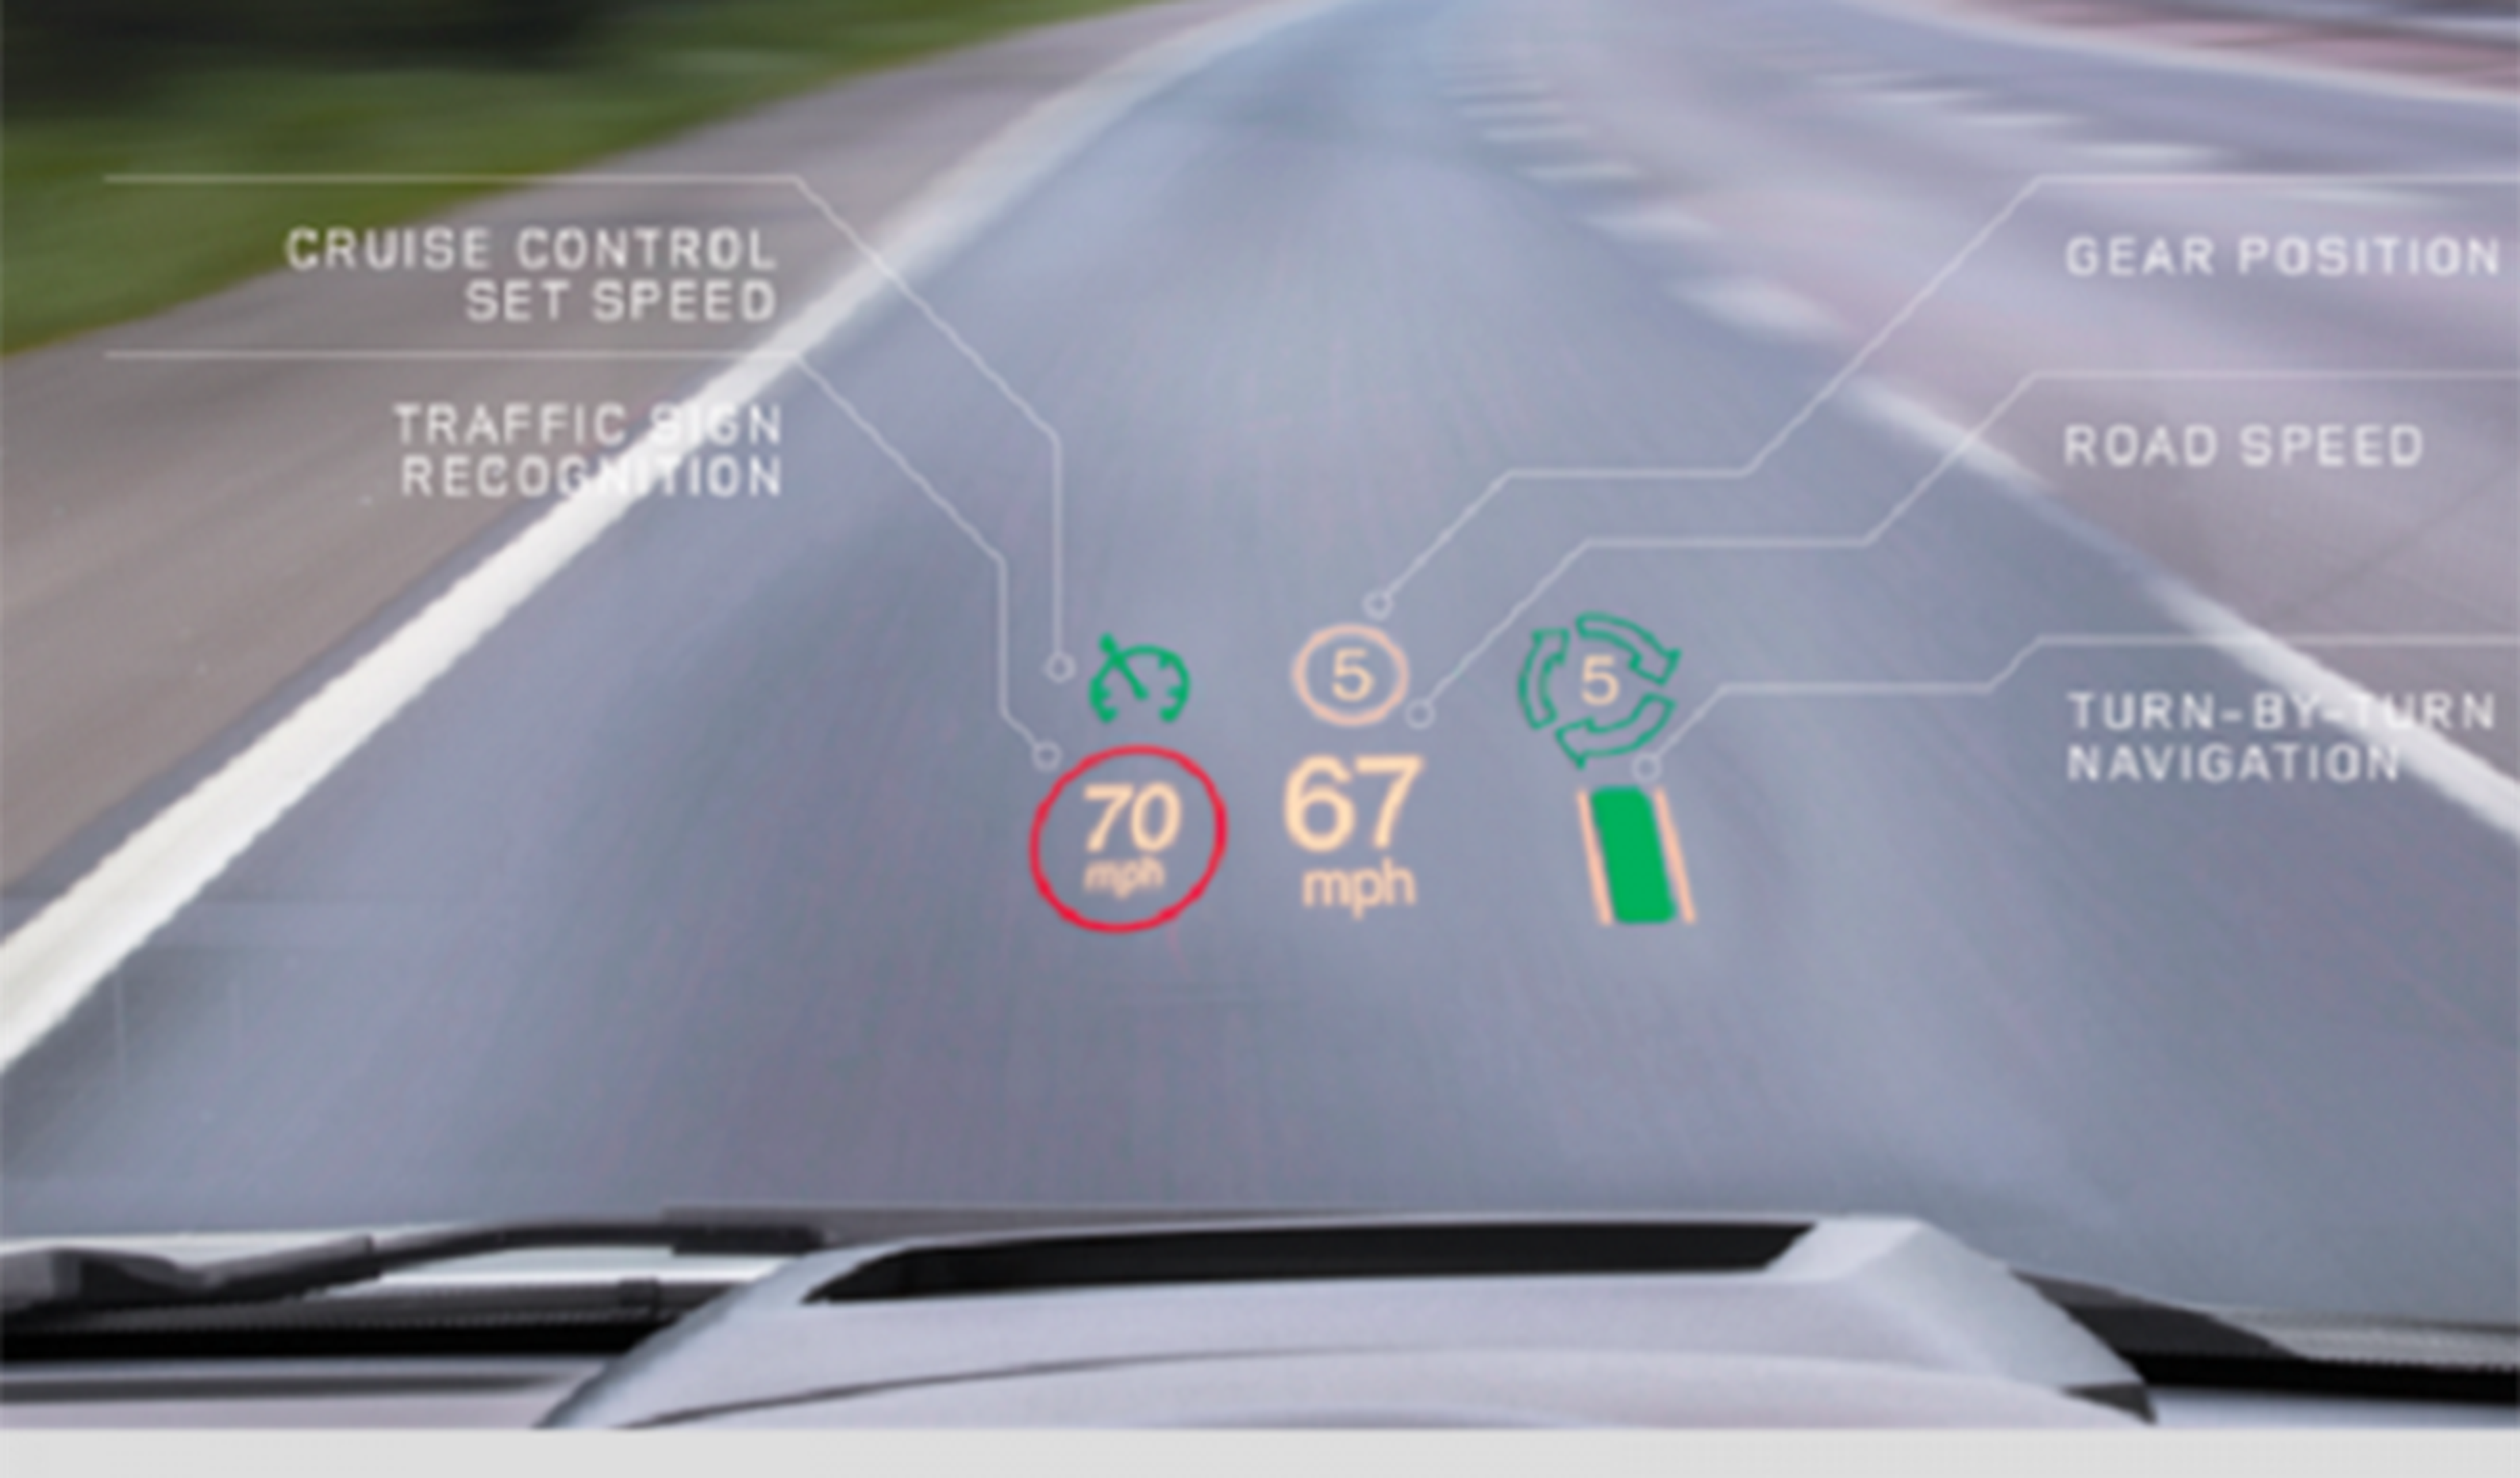 Jaguar Land Rover equipa sus vehículos con una pantalla HUD